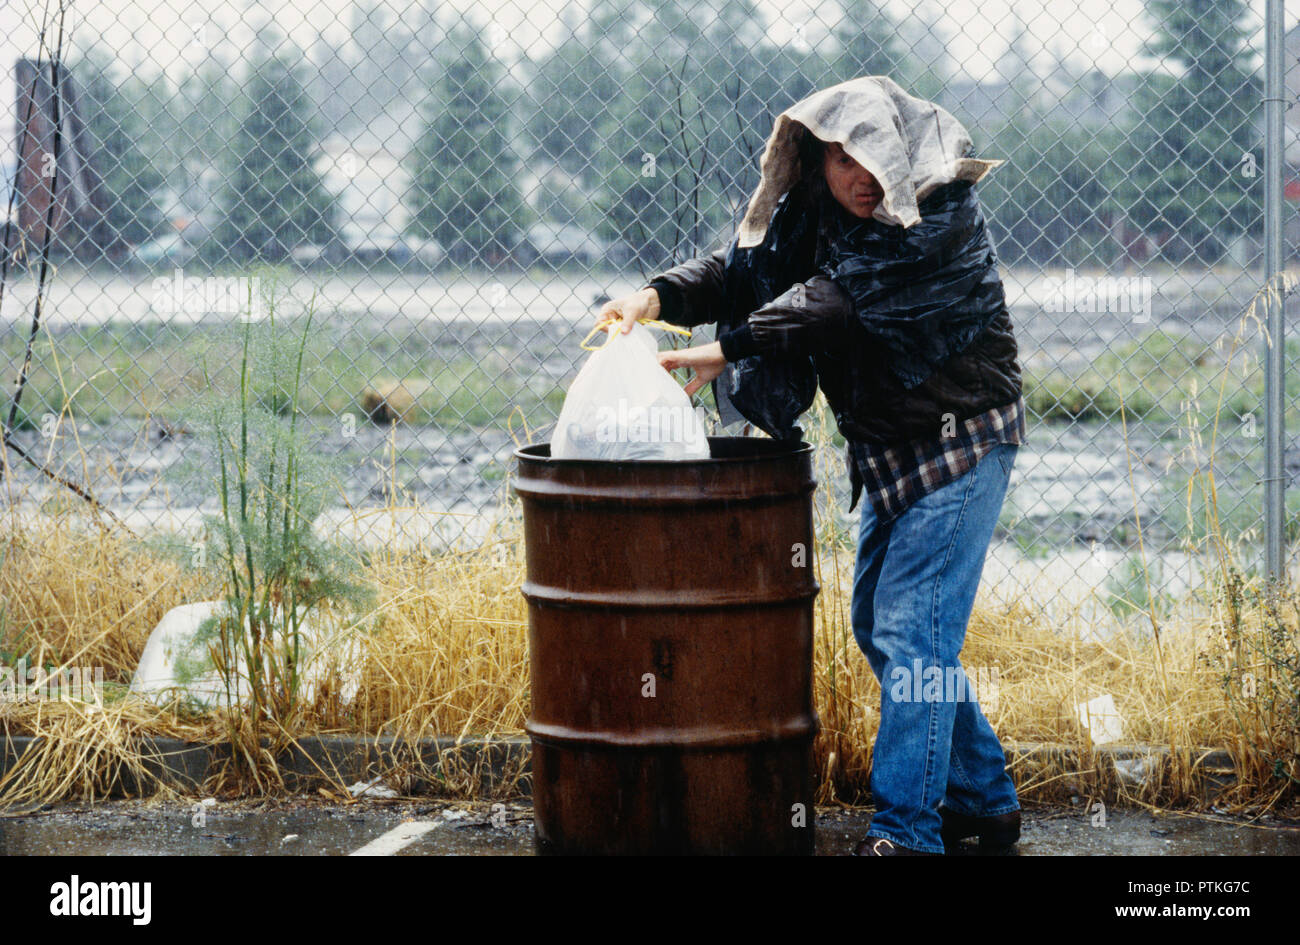 Obdachloser Grabungen durch eine trash Barrel für Lebensmittel, USA Stockfoto